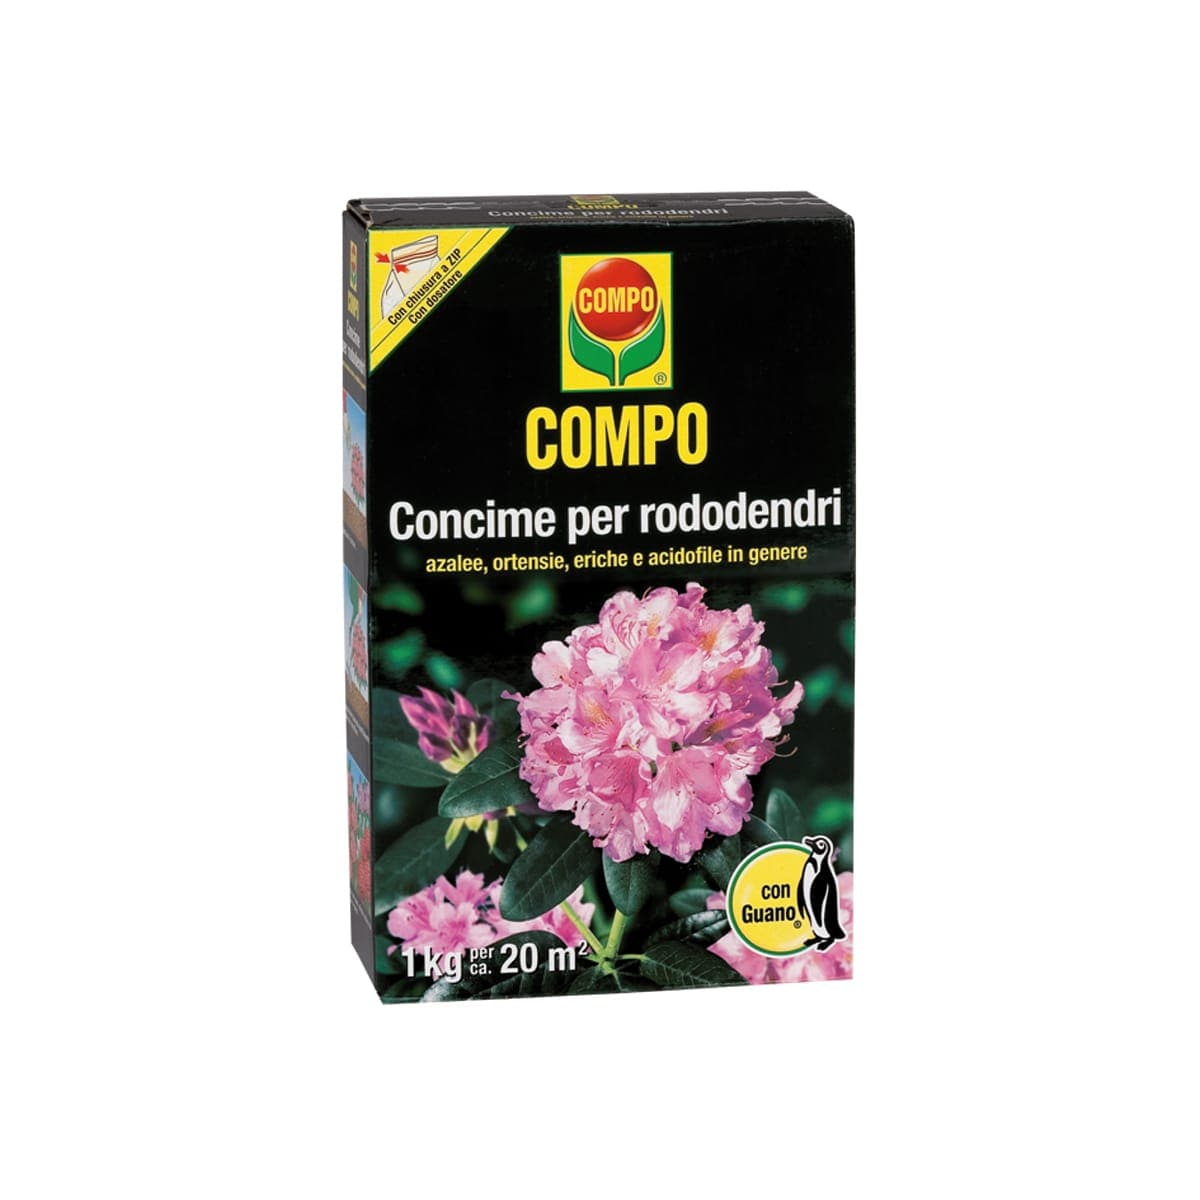 COMPO FERTILISER FOR ACIDOPHILIC PLANTS 850 G